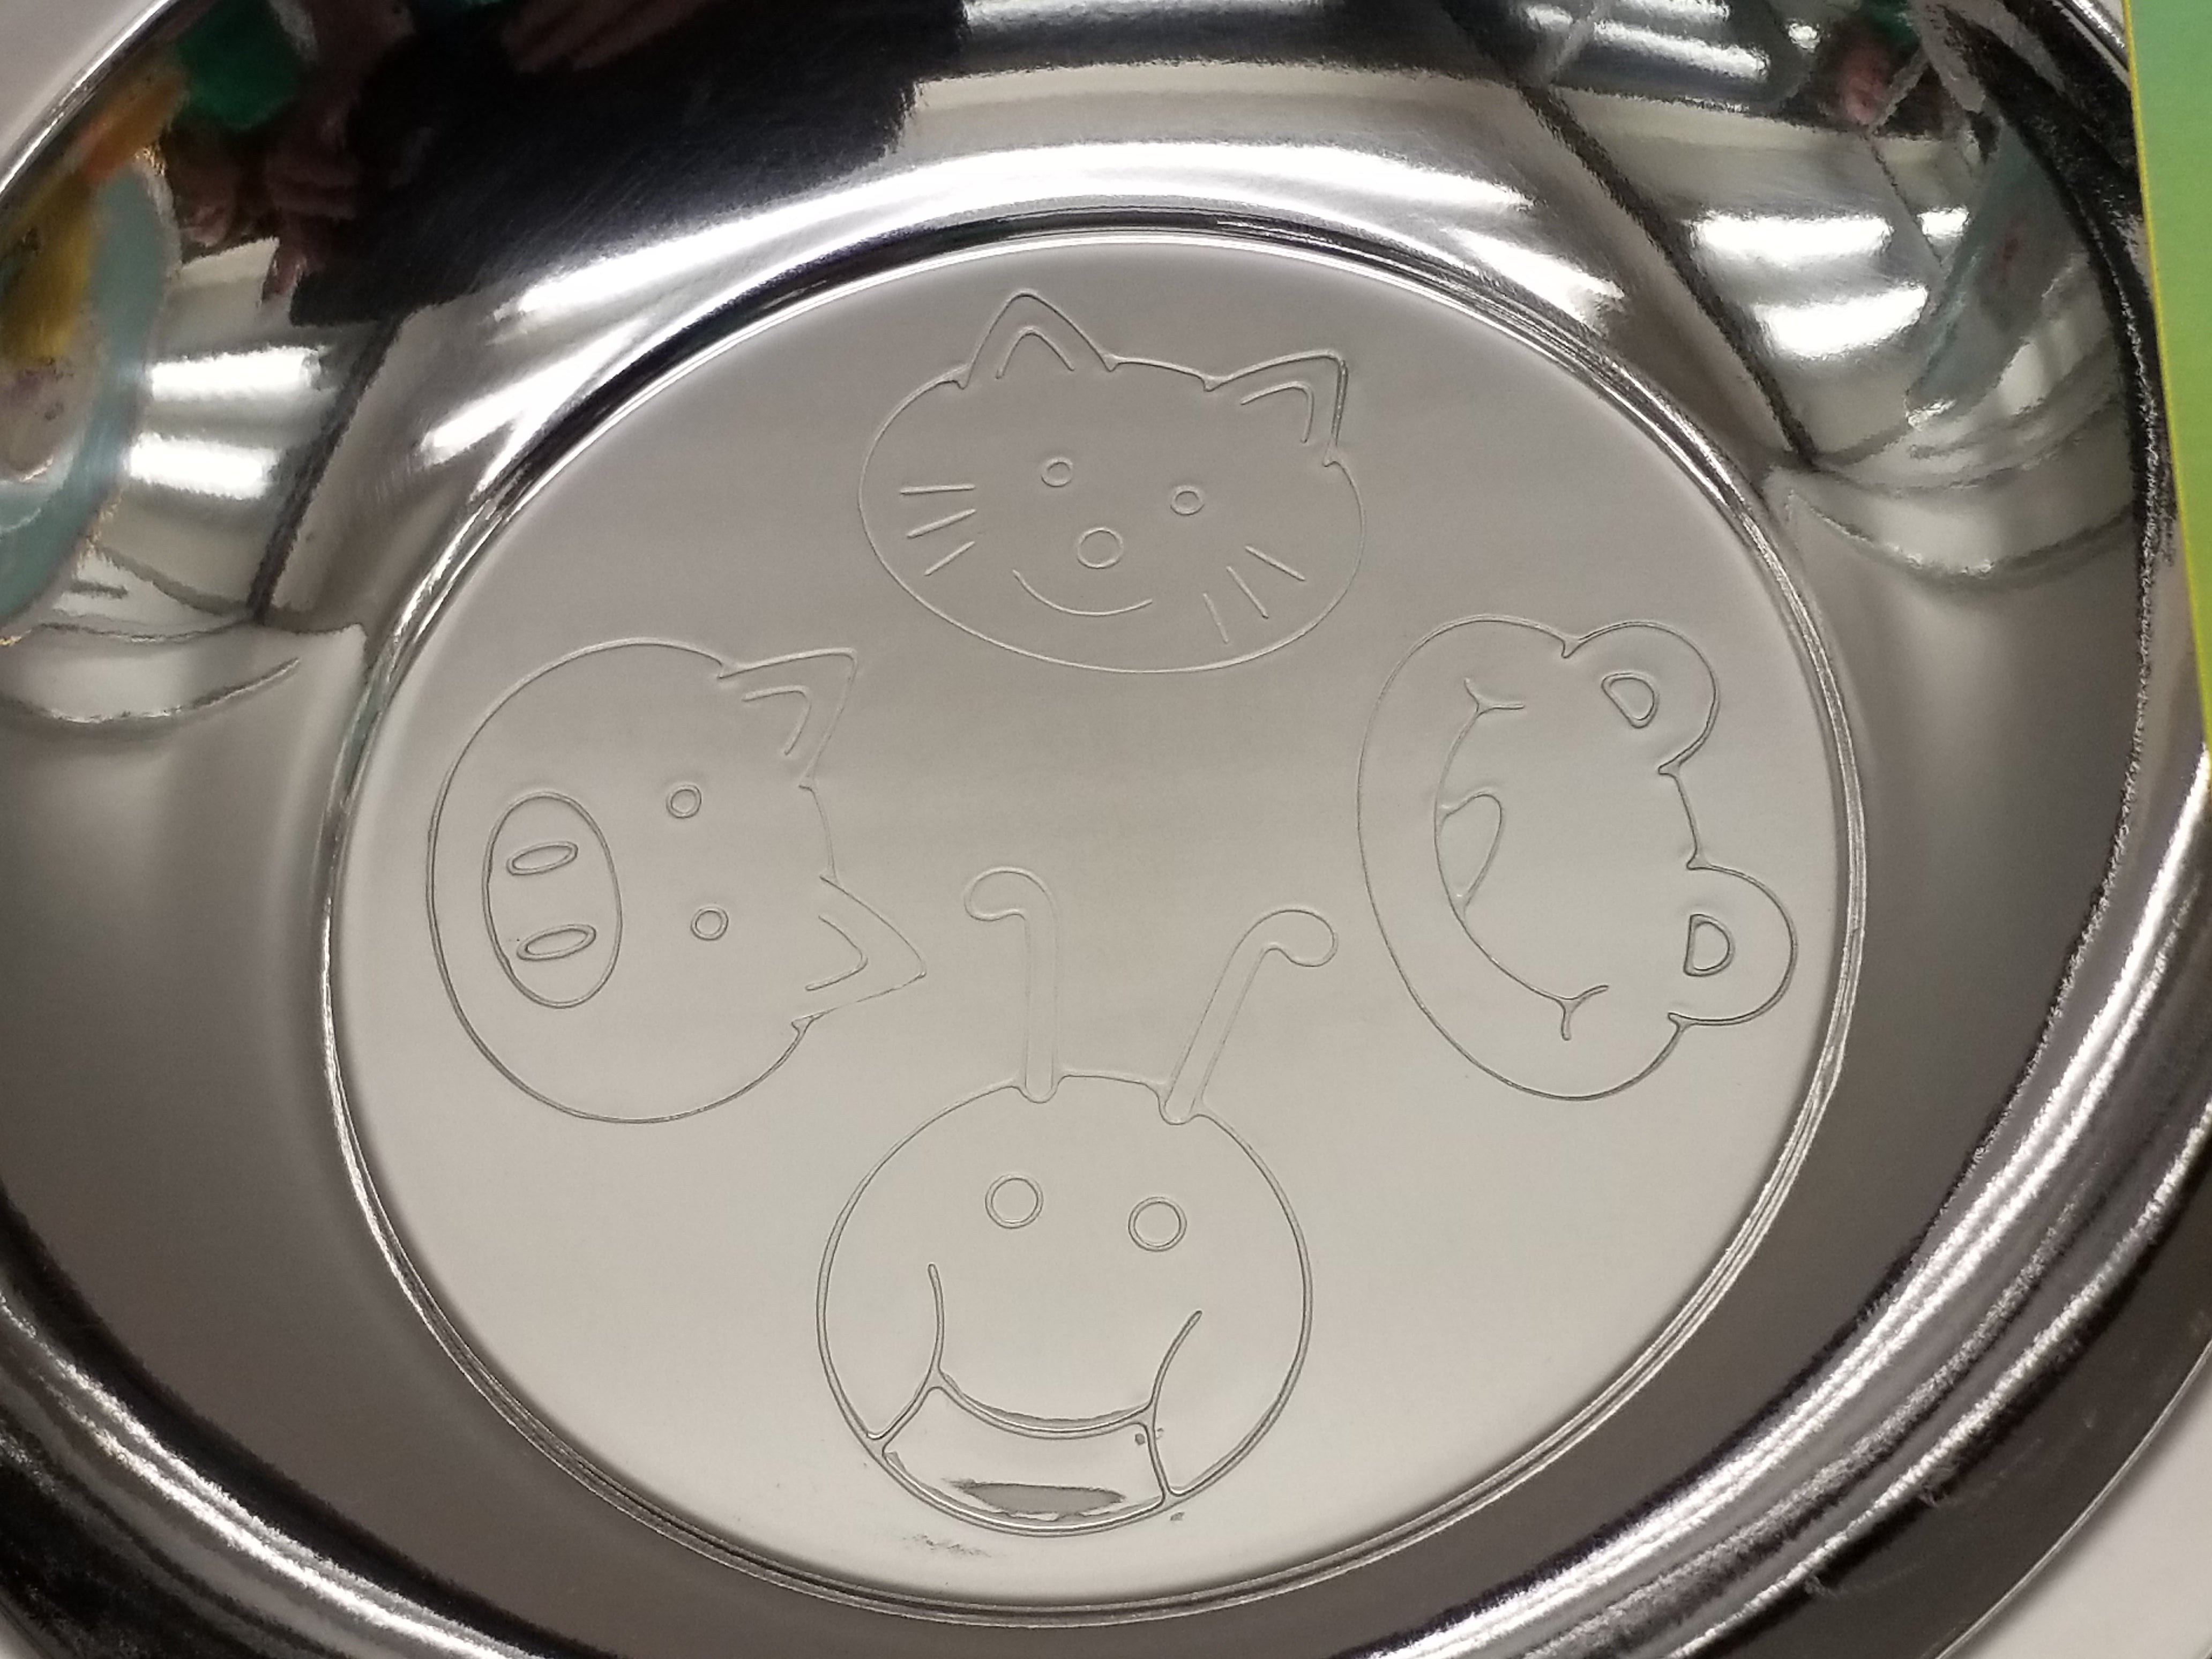 Children's Six Piece Cutlery Set - Animal Design